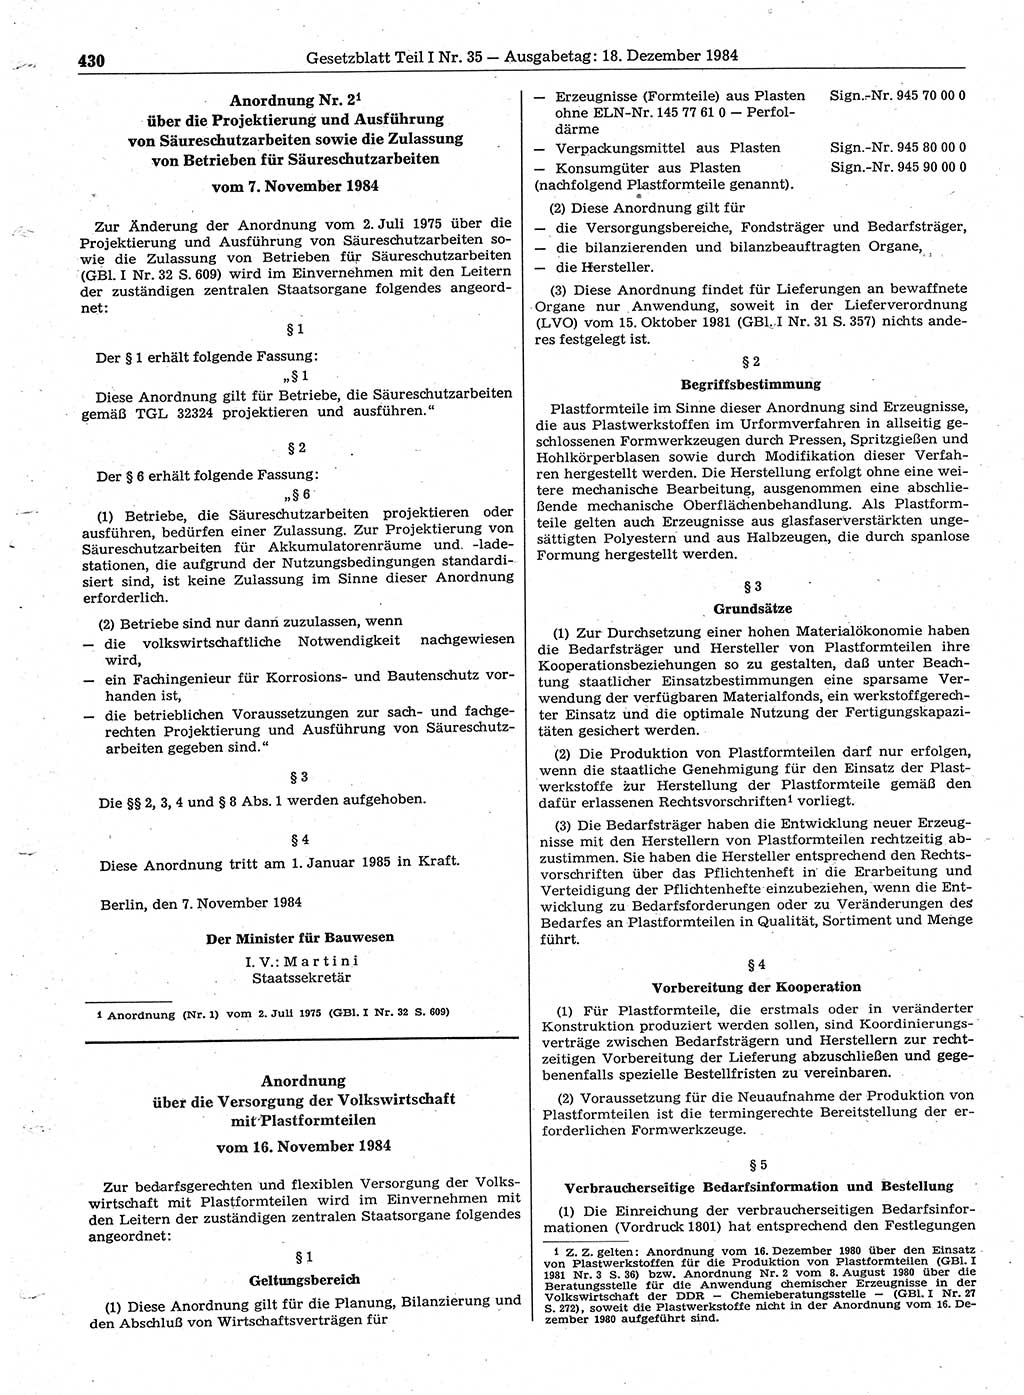 Gesetzblatt (GBl.) der Deutschen Demokratischen Republik (DDR) Teil Ⅰ 1984, Seite 430 (GBl. DDR Ⅰ 1984, S. 430)